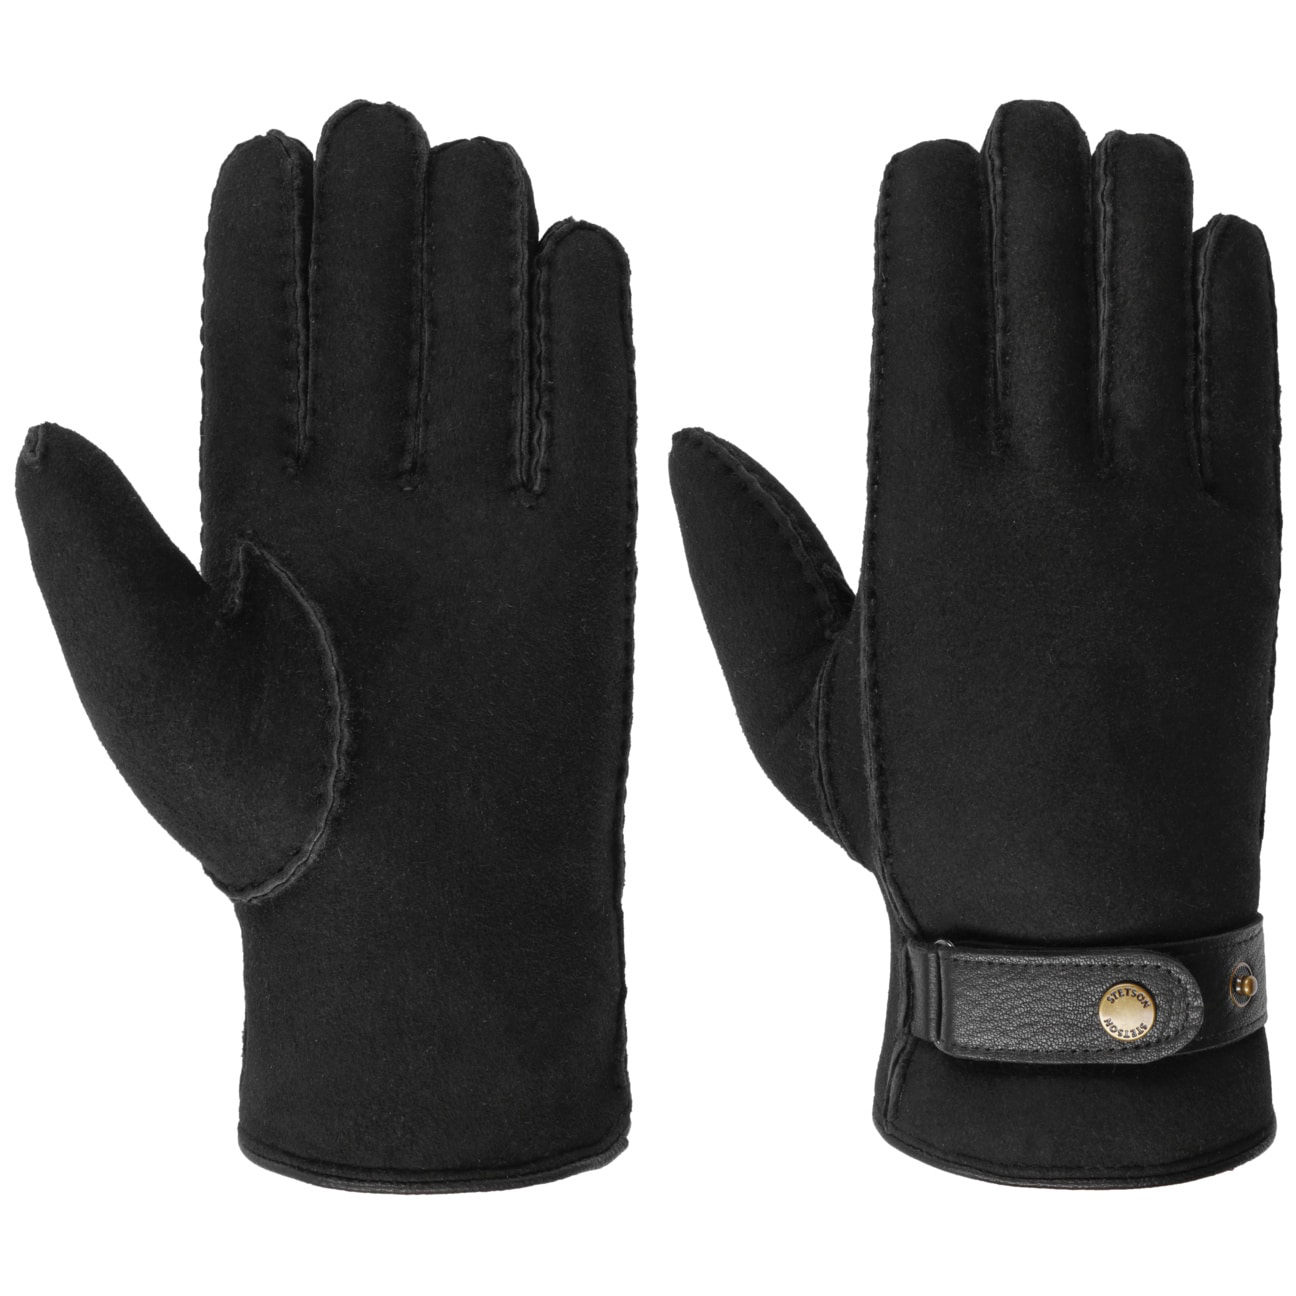 Stetson - Deerskin Lambswool Gloves - Black